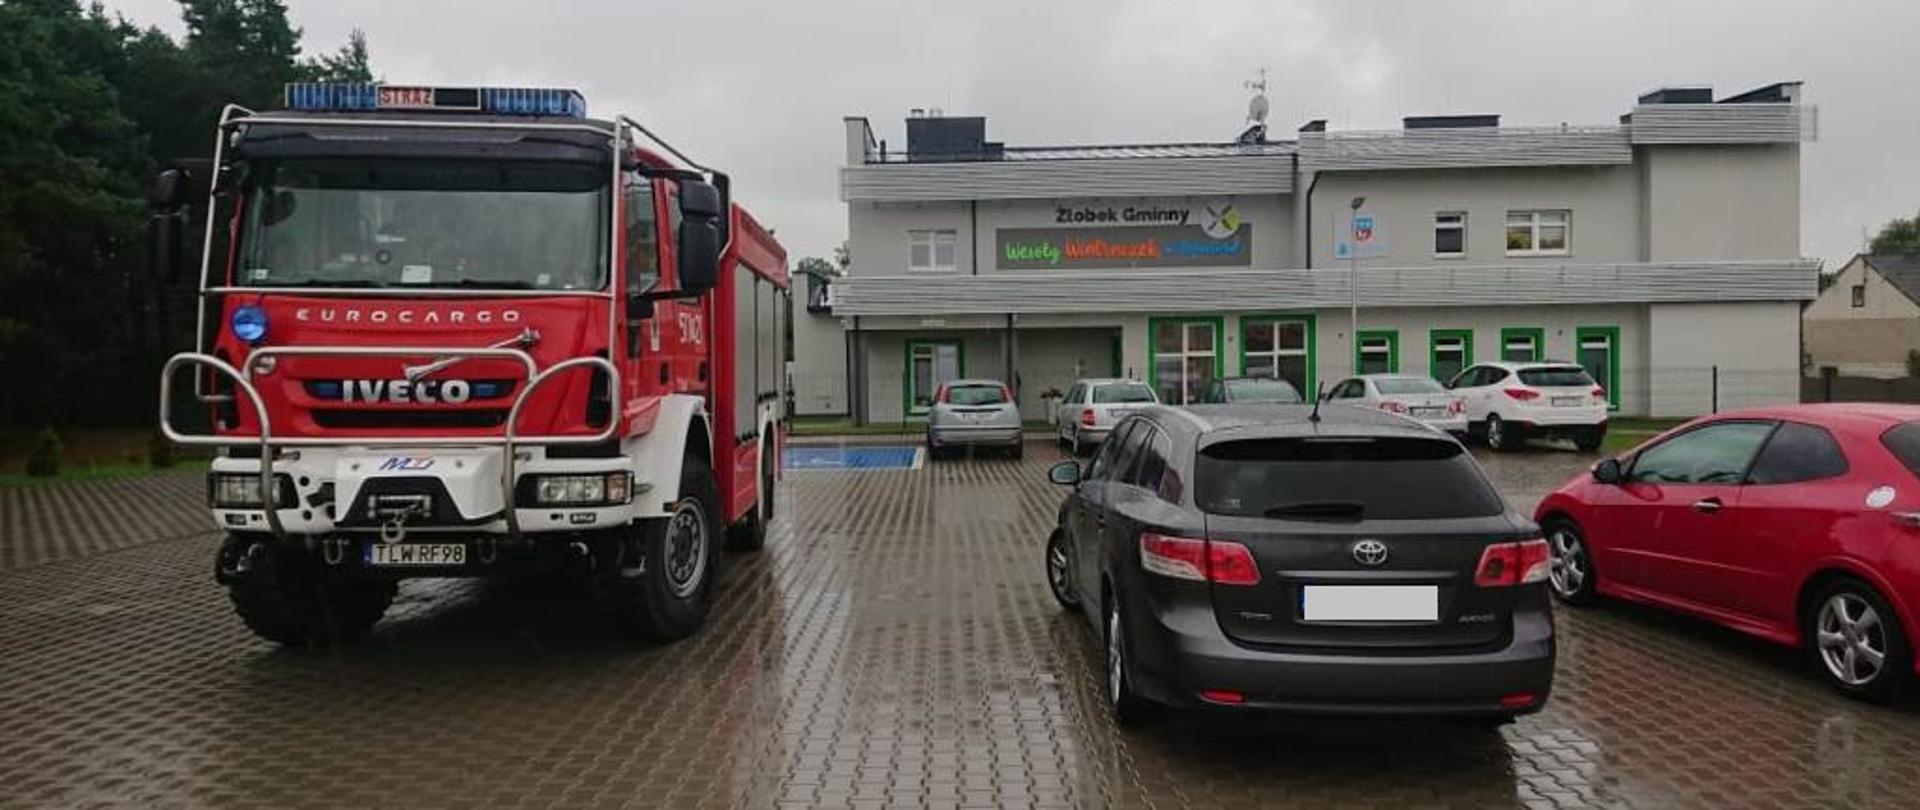 Parking przed obiektem żłobka, samochód pożarniczy Iveco oraz obok samochody osobowe, na drugim palnie budynek Żłobka Gminnego „Wesoły Wiatraczek”